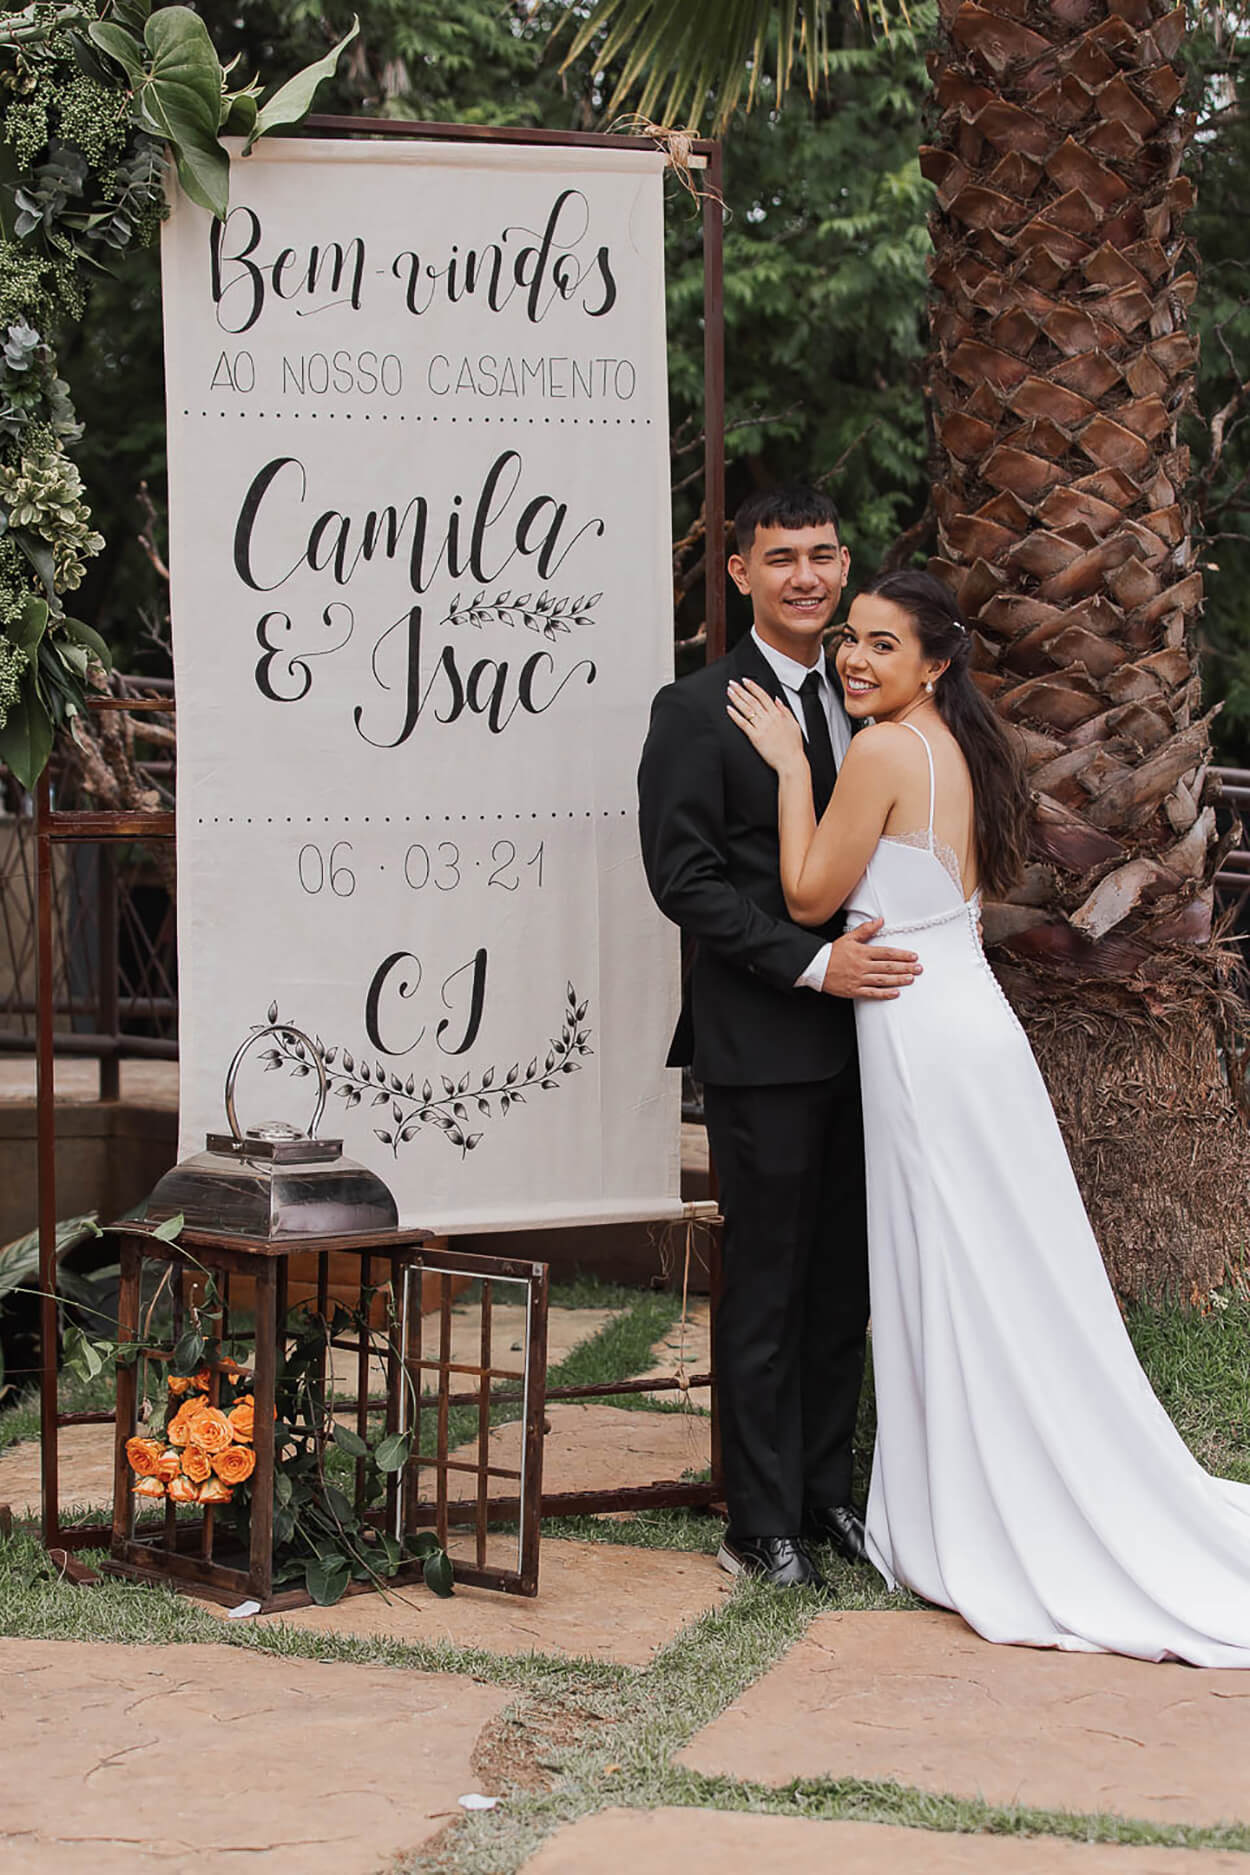 Noivos abraçados ao lado de placa de bem-vindos escrito Camila e Isac em letras cursivas no jardim